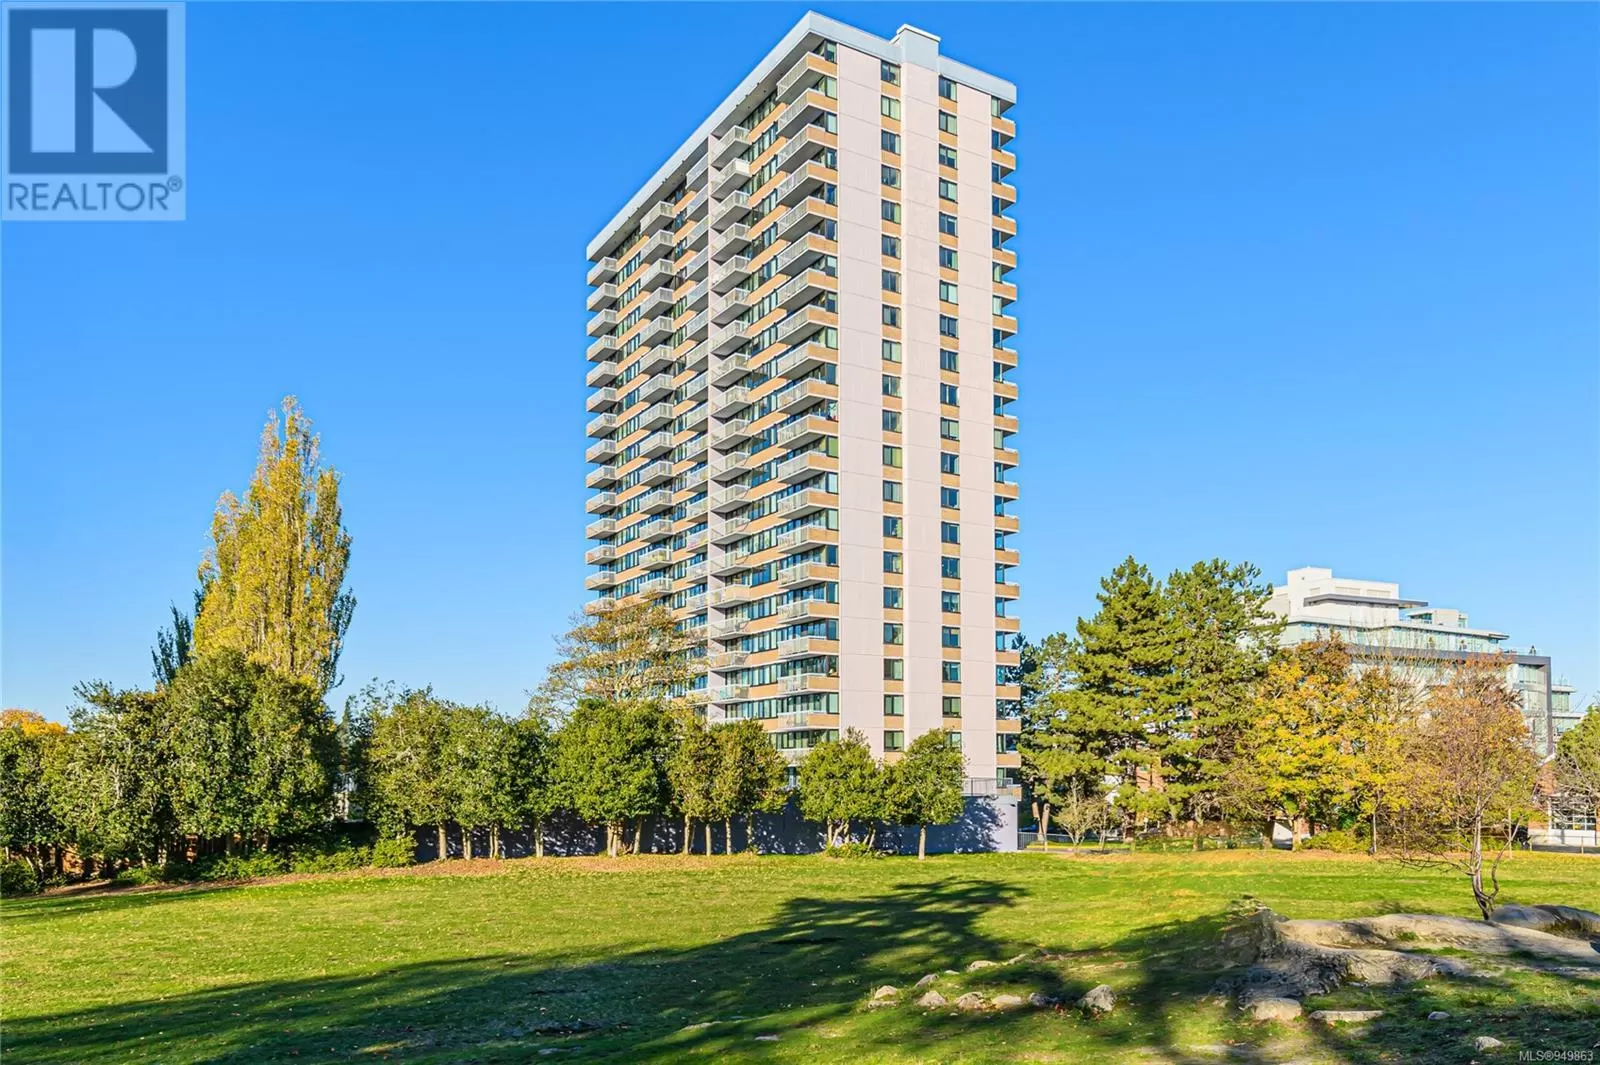 Apartment for rent: 407 647 Michigan St, Victoria, British Columbia V8V 1S9